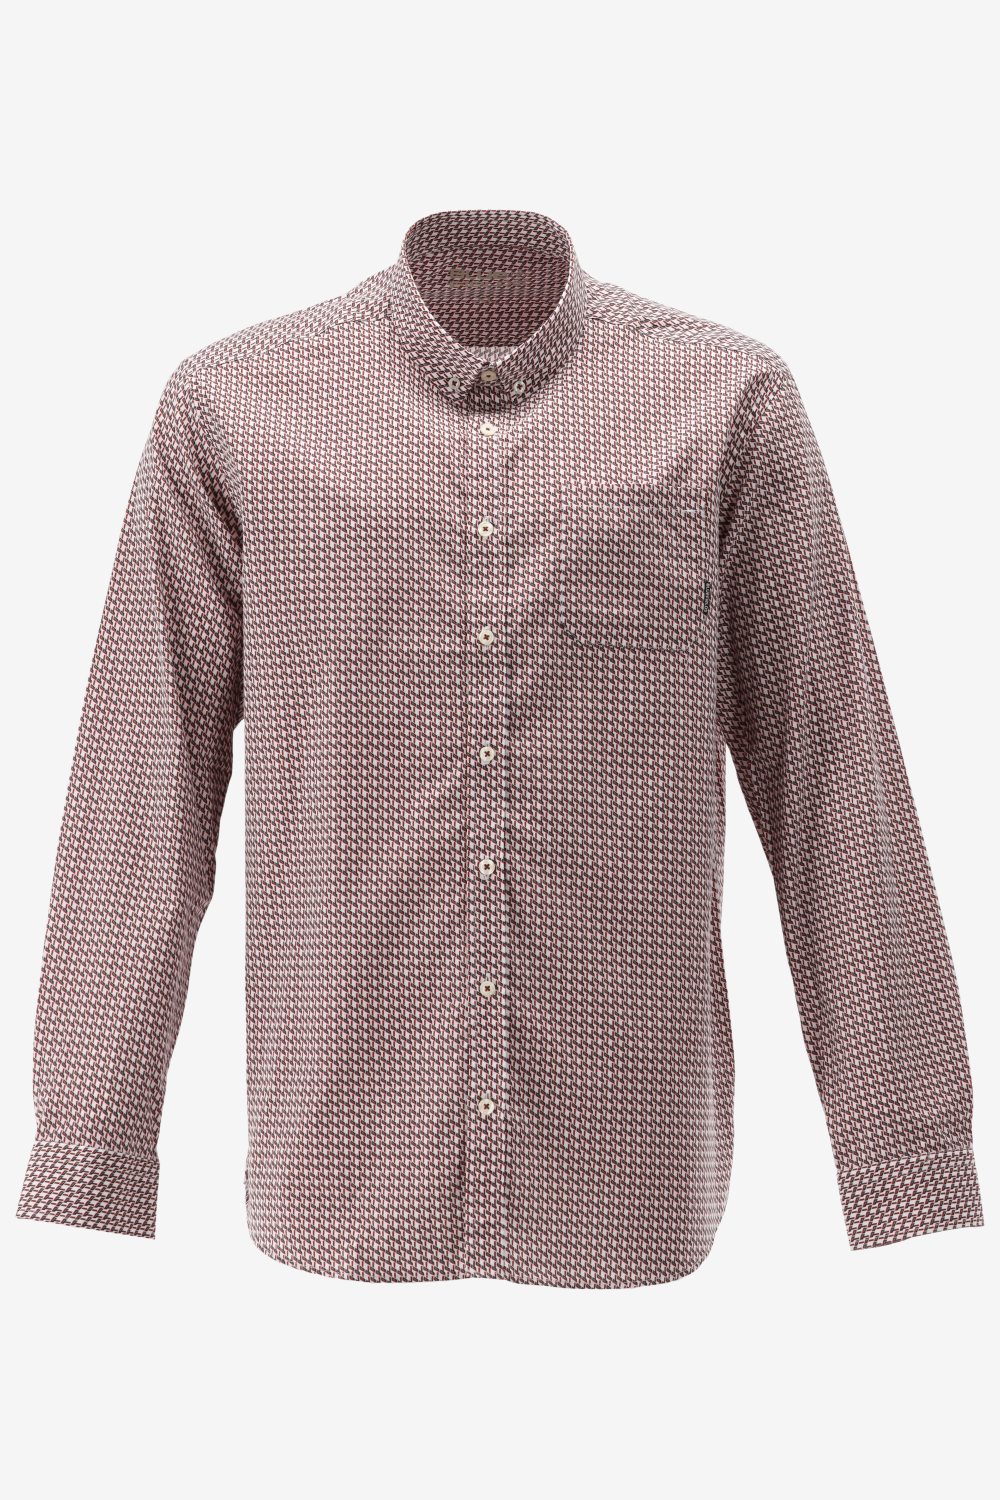 BlueFields Overhemd Shirt Ls Printed Pop 21442003 1147 Mannen Maat - 3XL